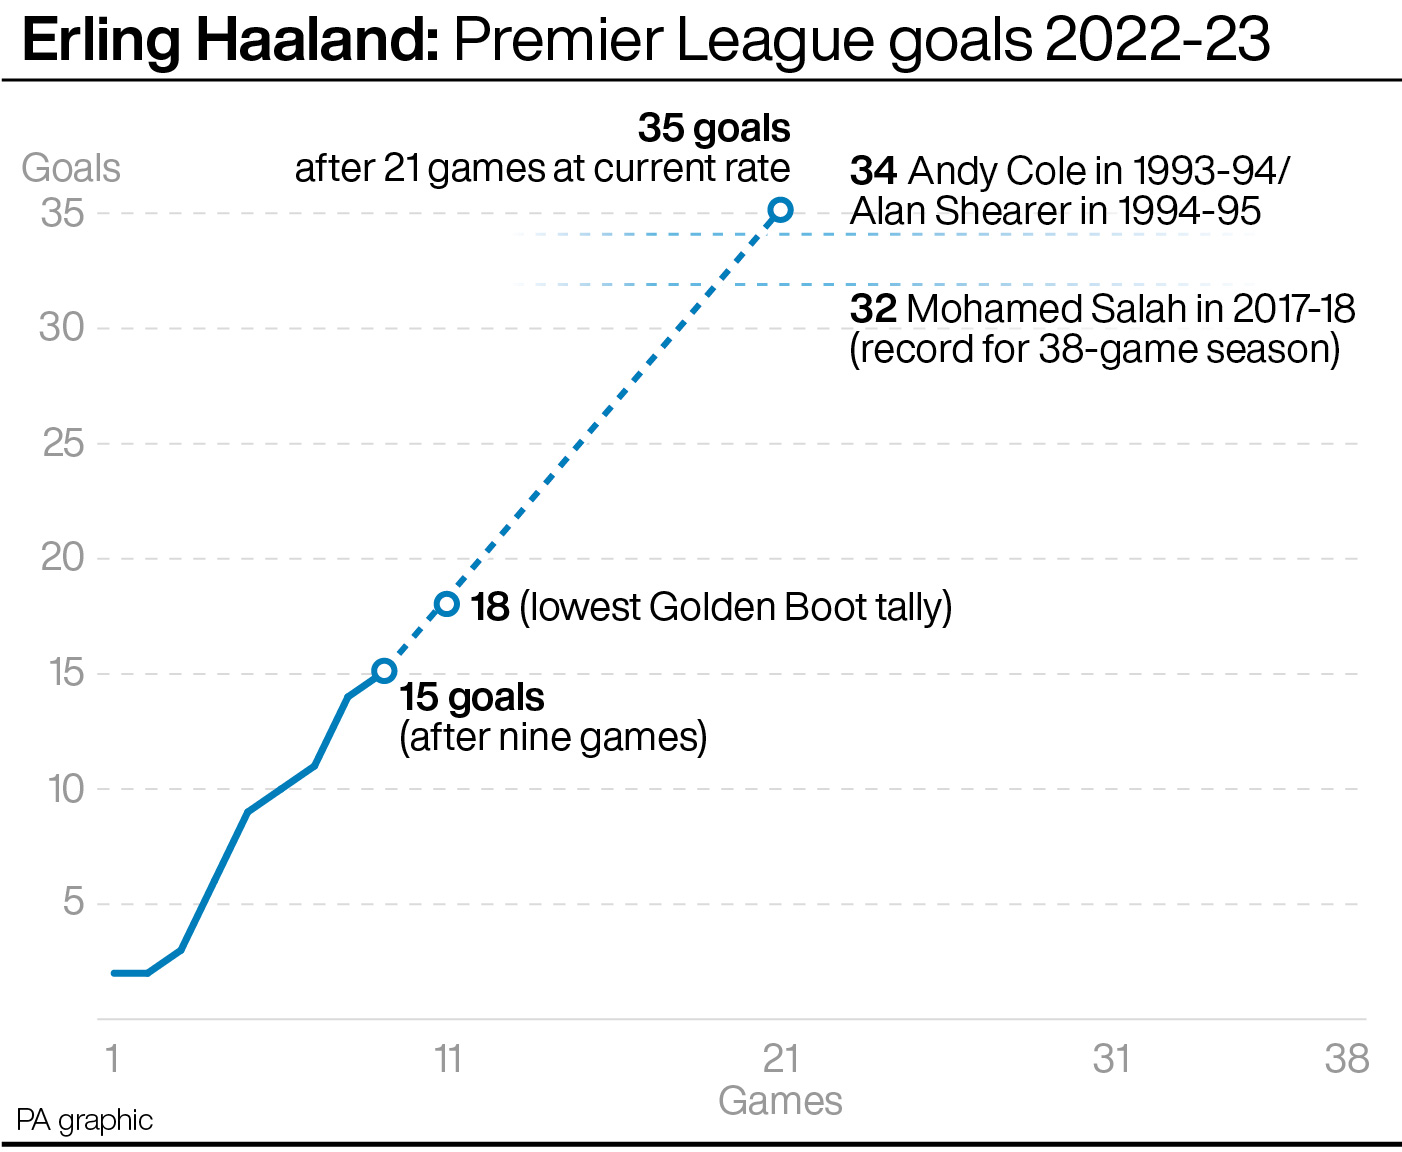 Erling Haaland: Premier League goals 2022-23 vs past Golden Boot winners